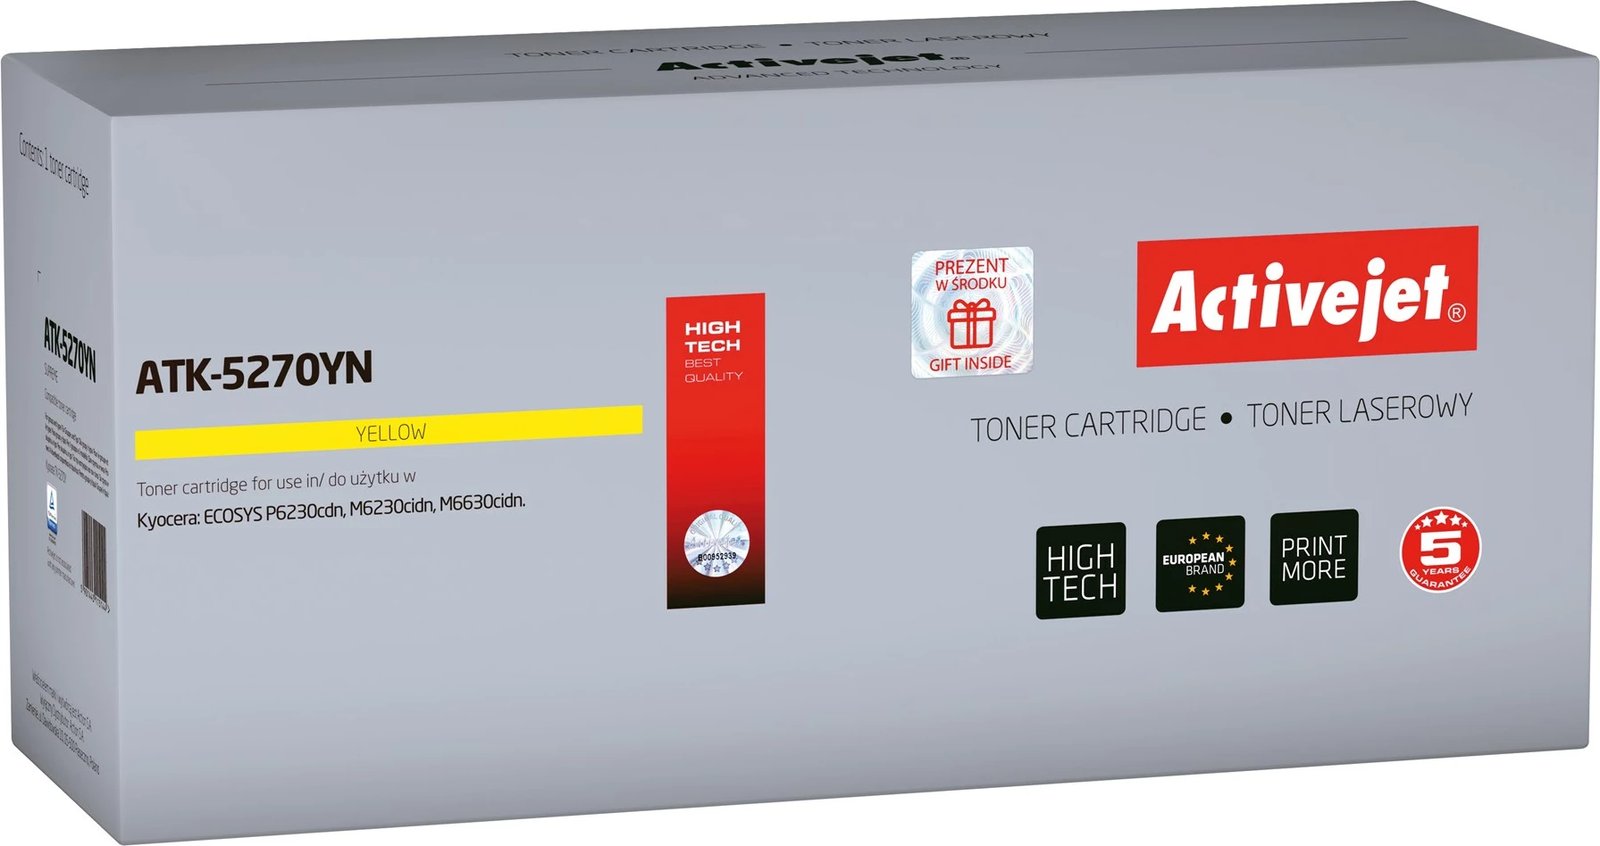 Toner zëvendësues Activejet ATK-5270YN për printerët Kyocera, 6000 faqe, i verdhë